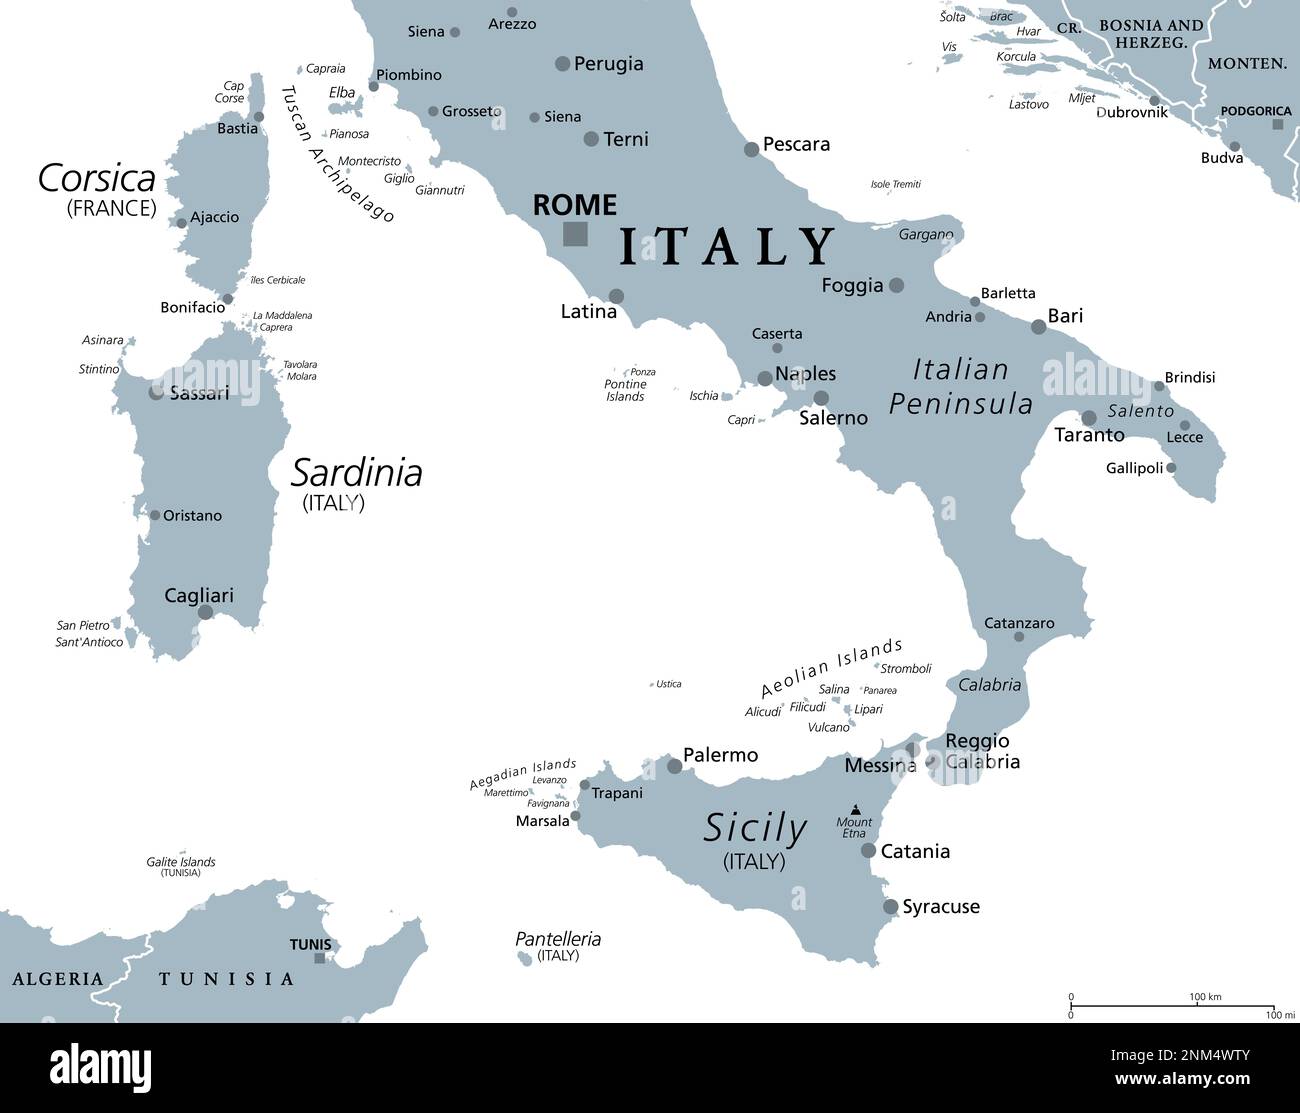 Italia Meridionale, Meridione o mezzogiorno, mappa politica grigia. Macroregione d'Italia composta dalle regioni meridionali. Foto Stock